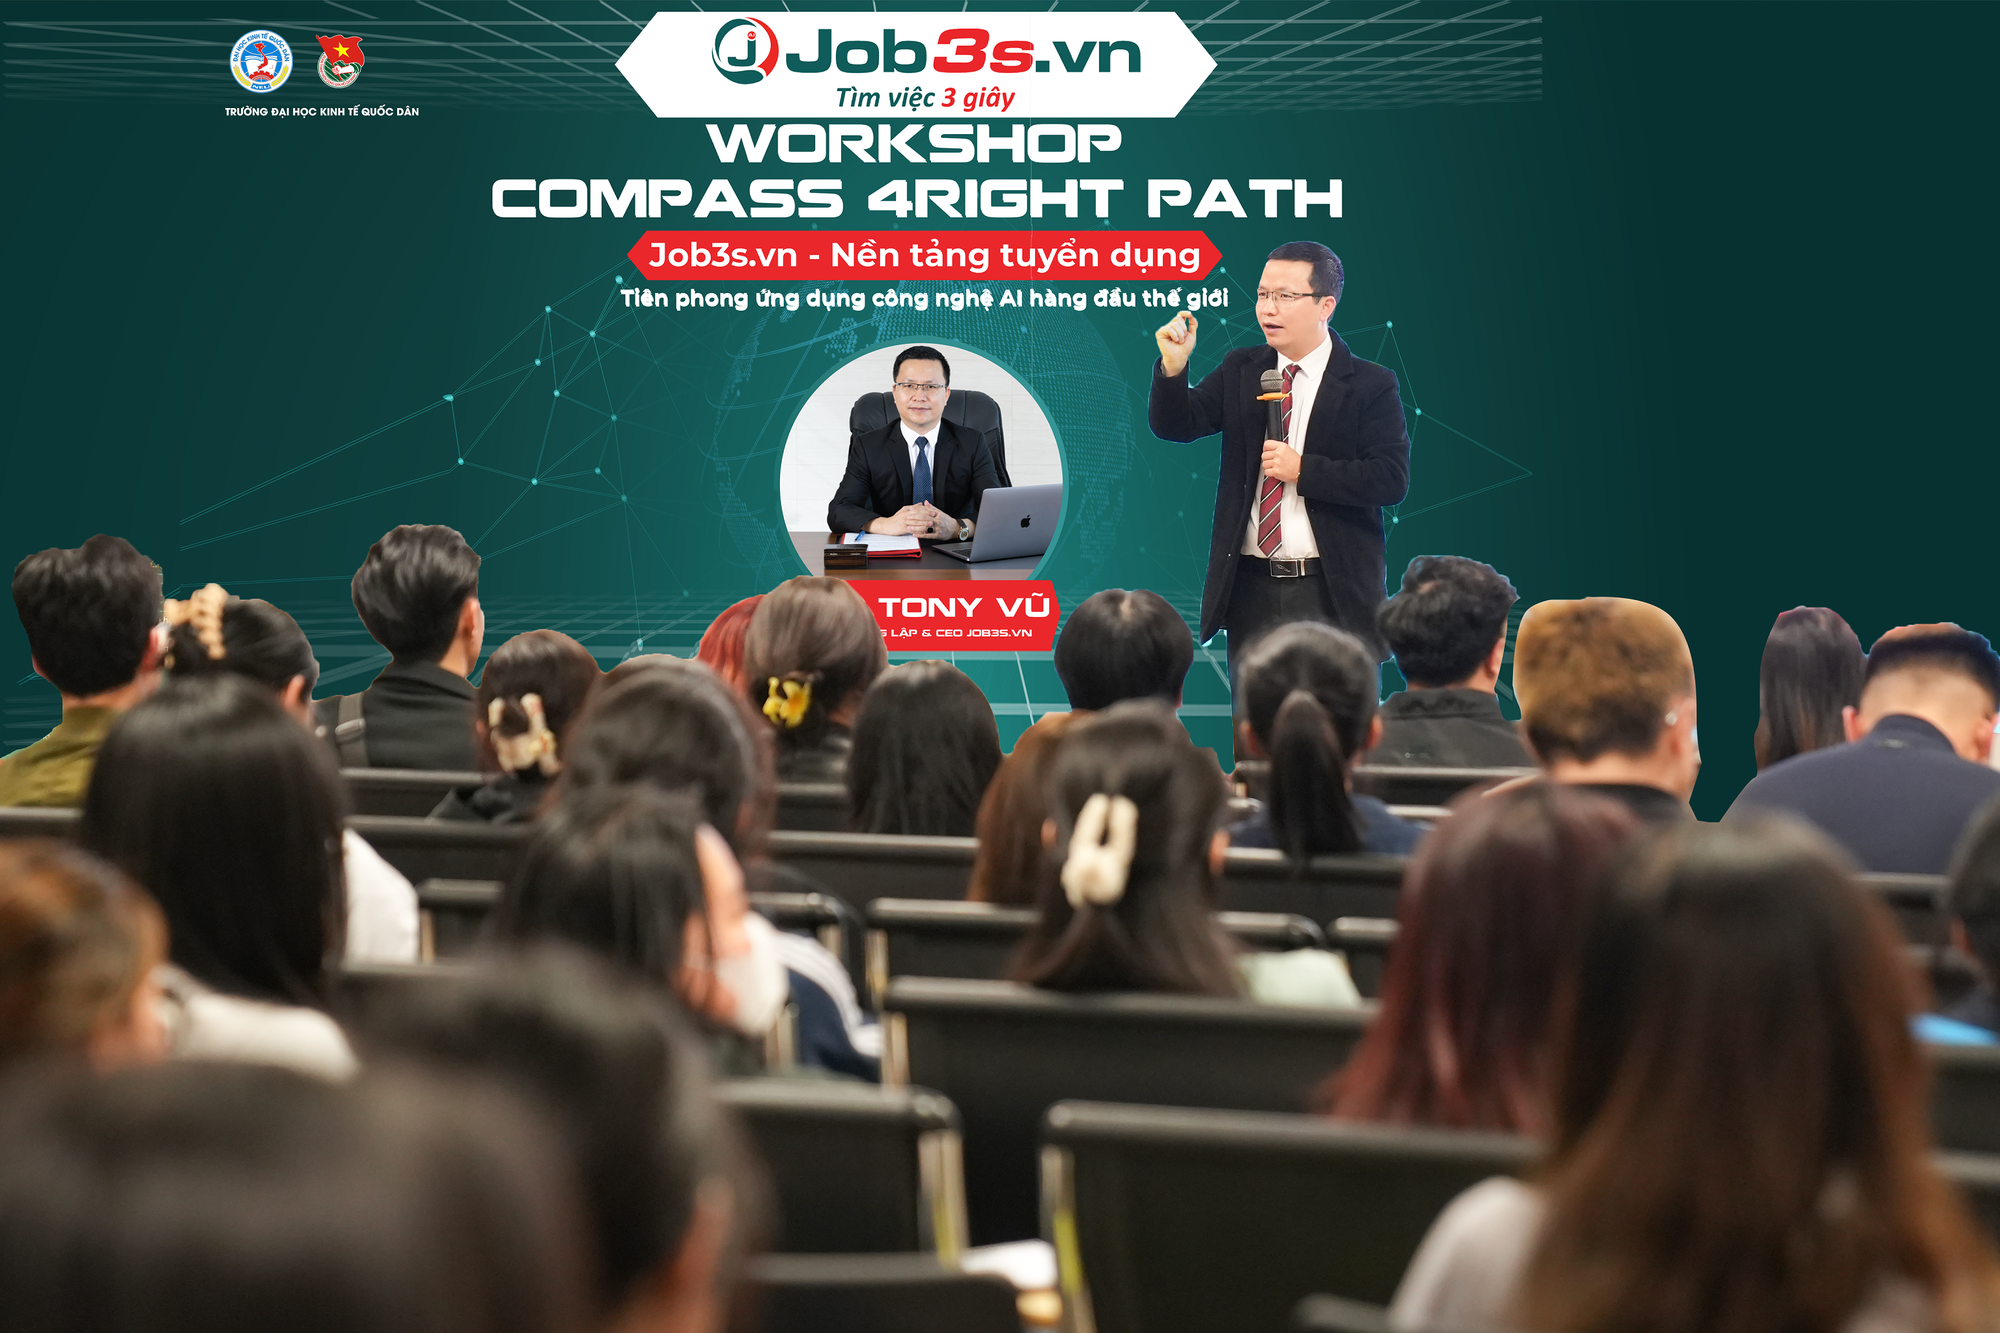 CEO Tony Vũ của Job3s.vn: Diễn giả đặc biệt tạo sức nóng tại Đại học Kinh tế Quốc dân- Ảnh 2.